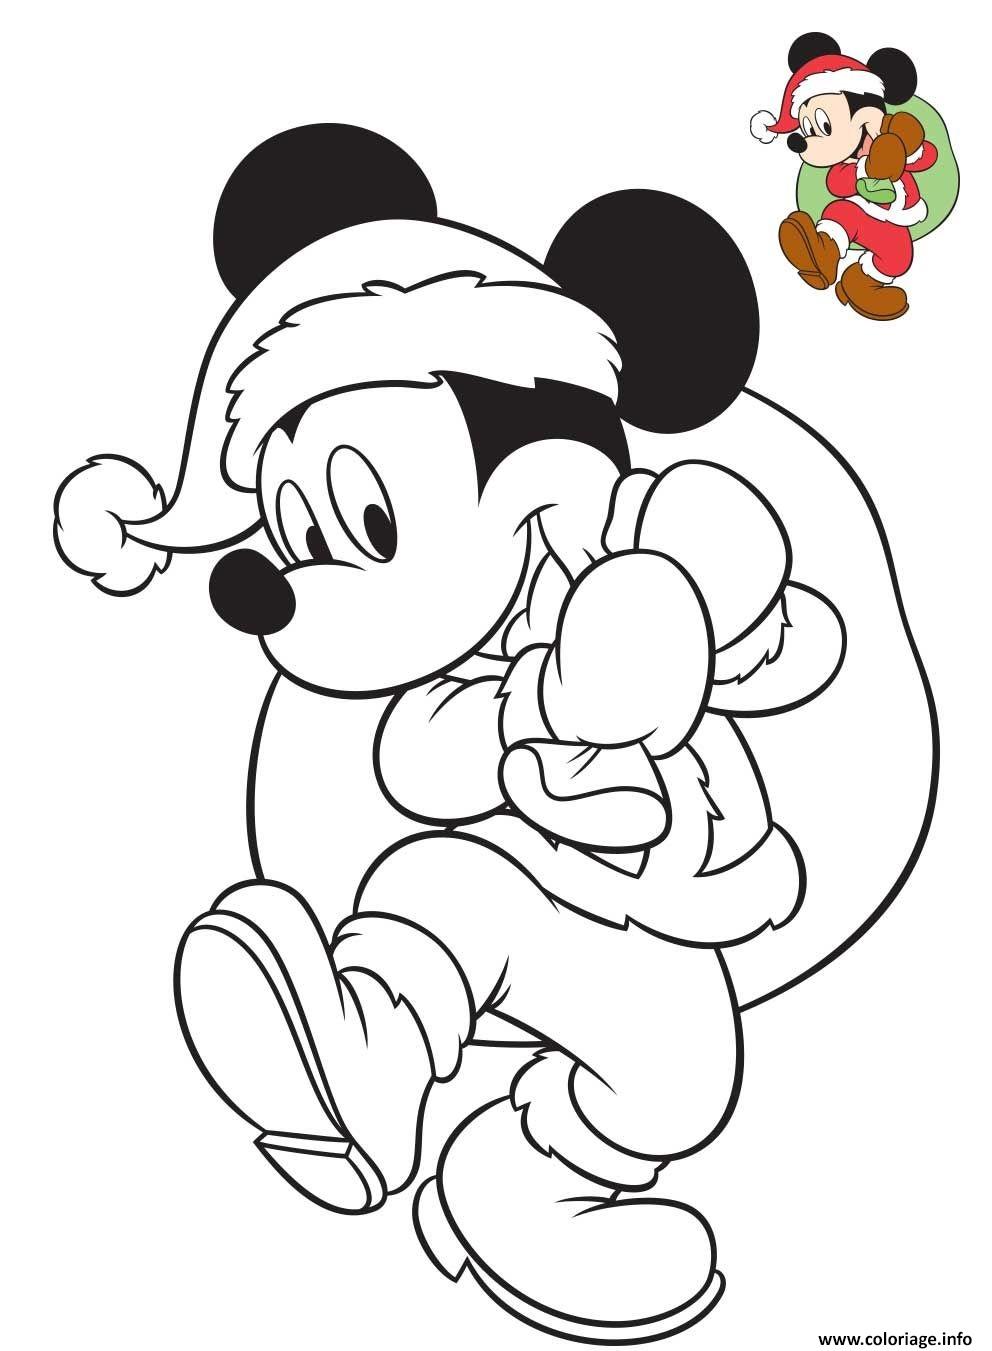 Coloriage Mickey Mouse Joue Au Pere Noel Avec Le Sac De Cadeaux